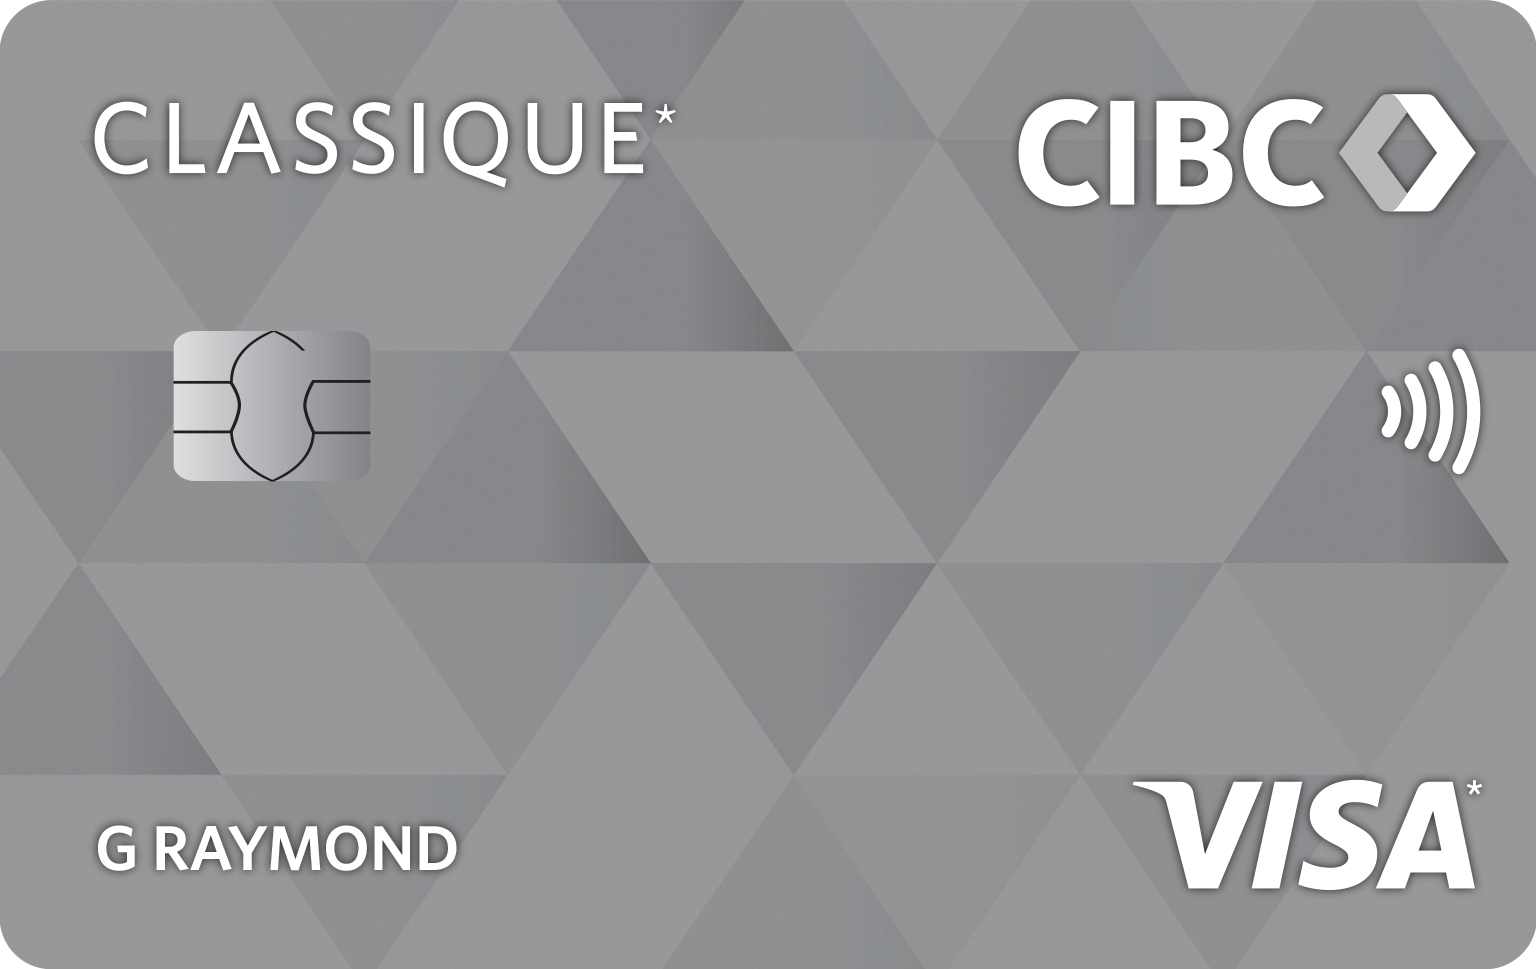 Carte Classique CIBC Visa*